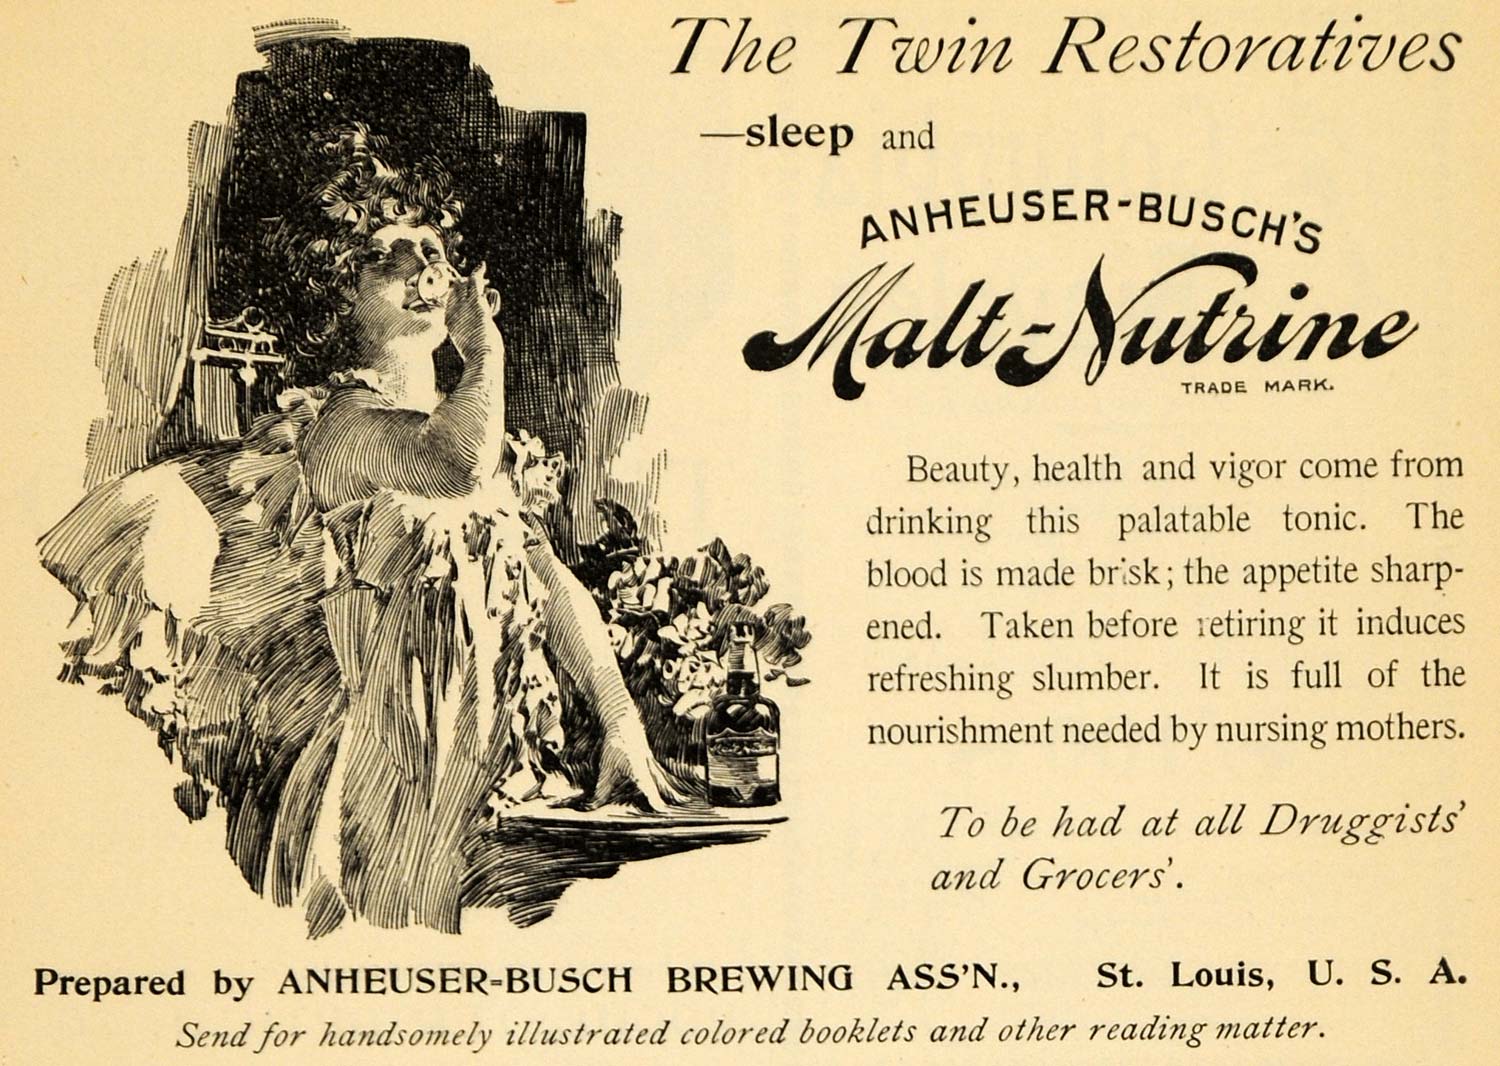 1895 Ad Twin Restoratives Anheuser Busch Malt Nutrine - ORIGINAL TFO1